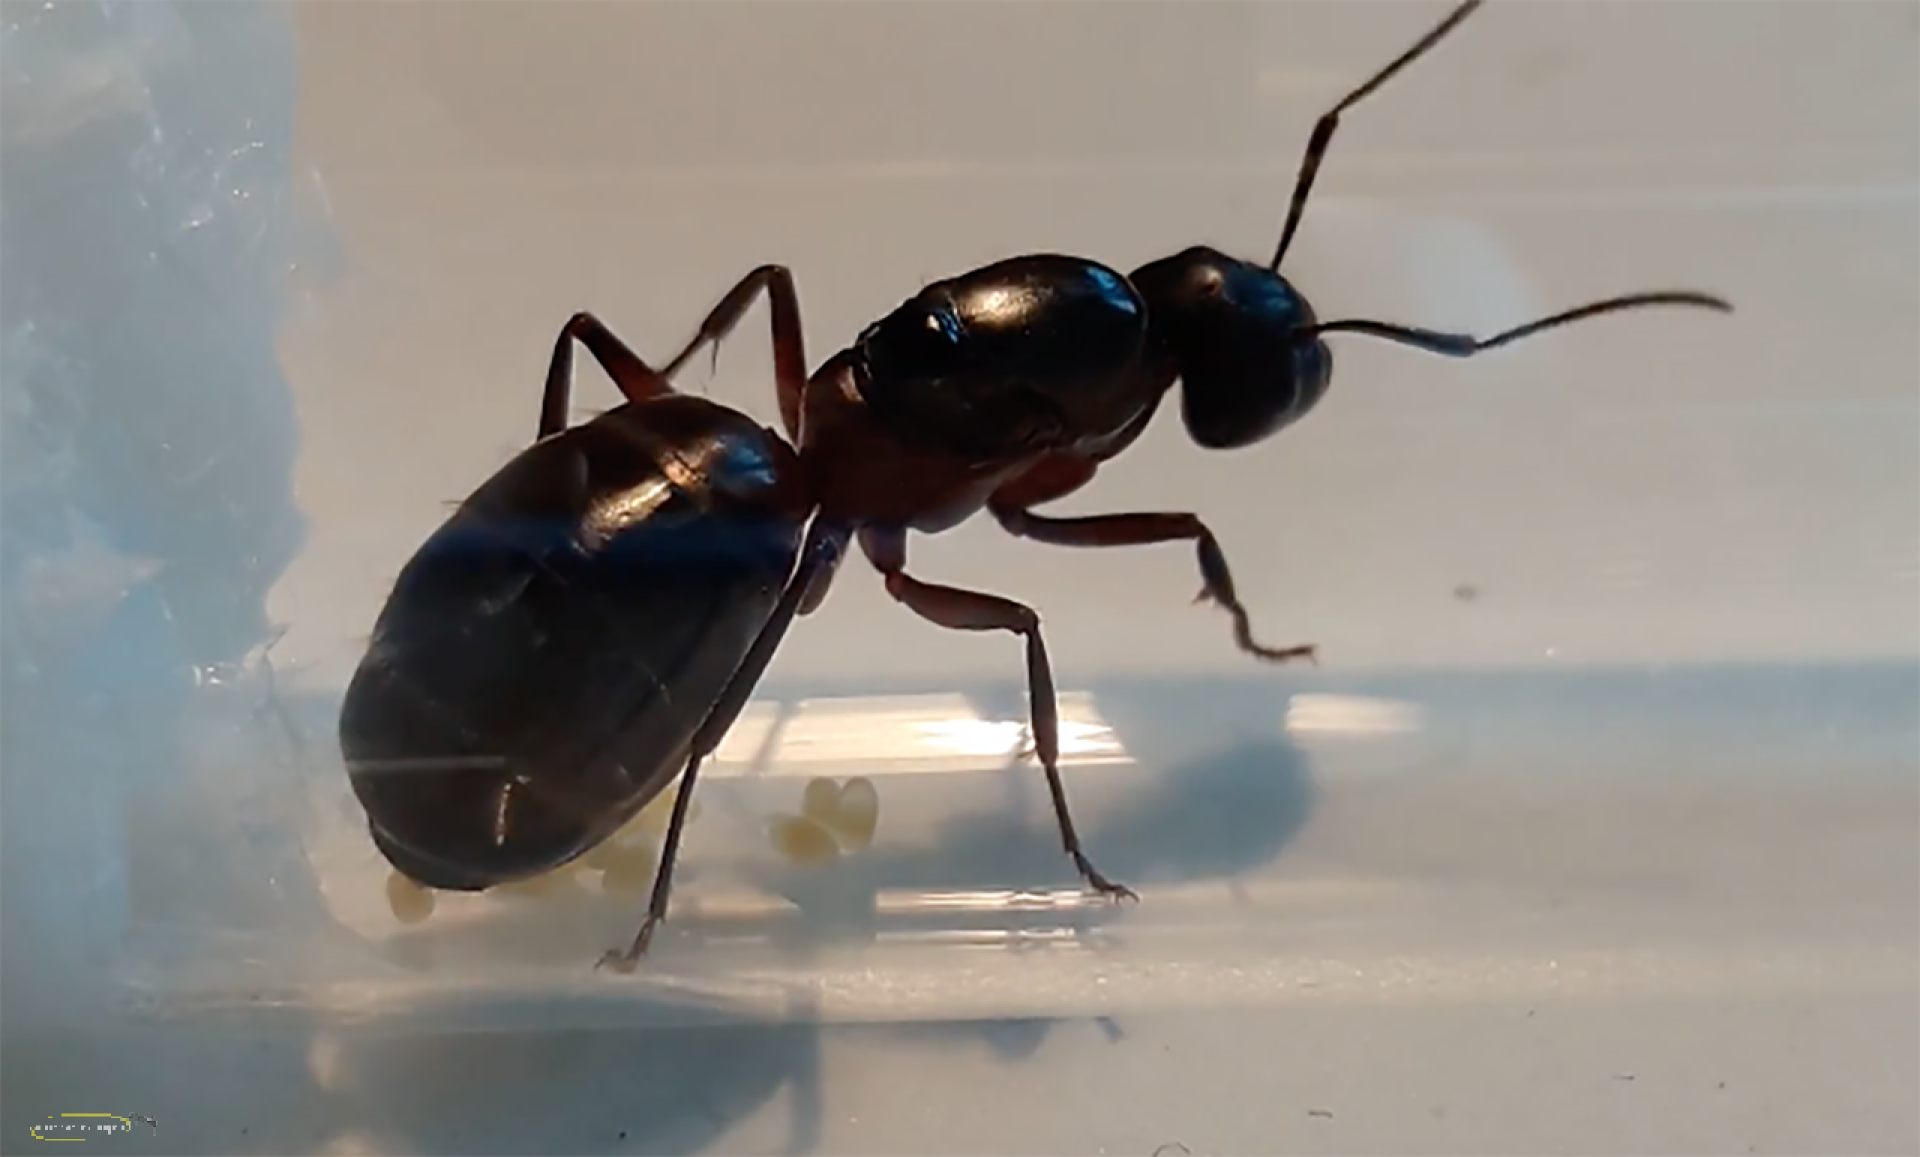 Camponotus ligniperdus (Braunschwarze Rossameise)